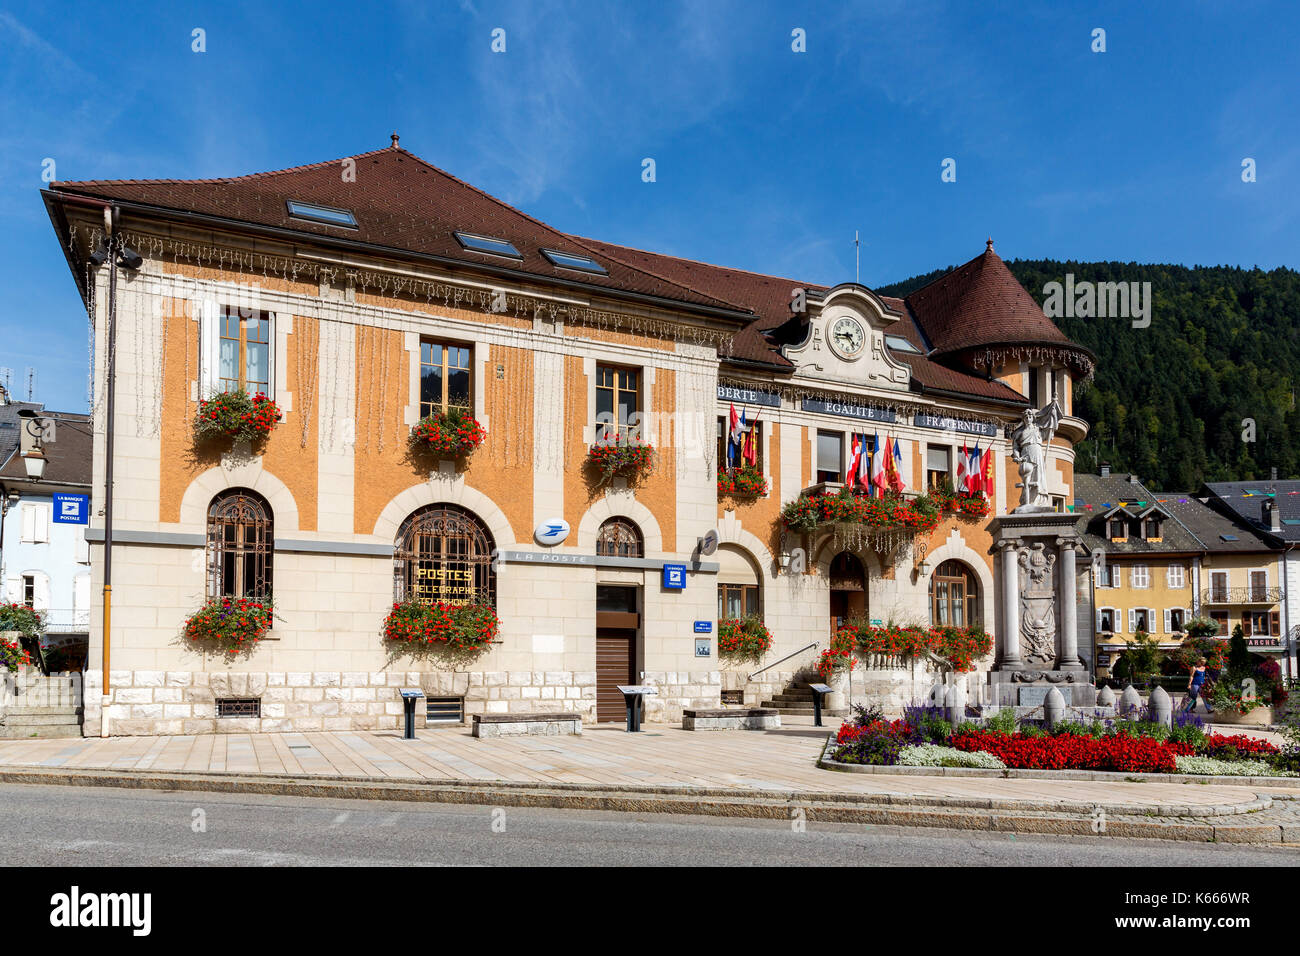 Hotel de Ville, City Hall, Thônes, Haute-Savoie department, France Stock Photo